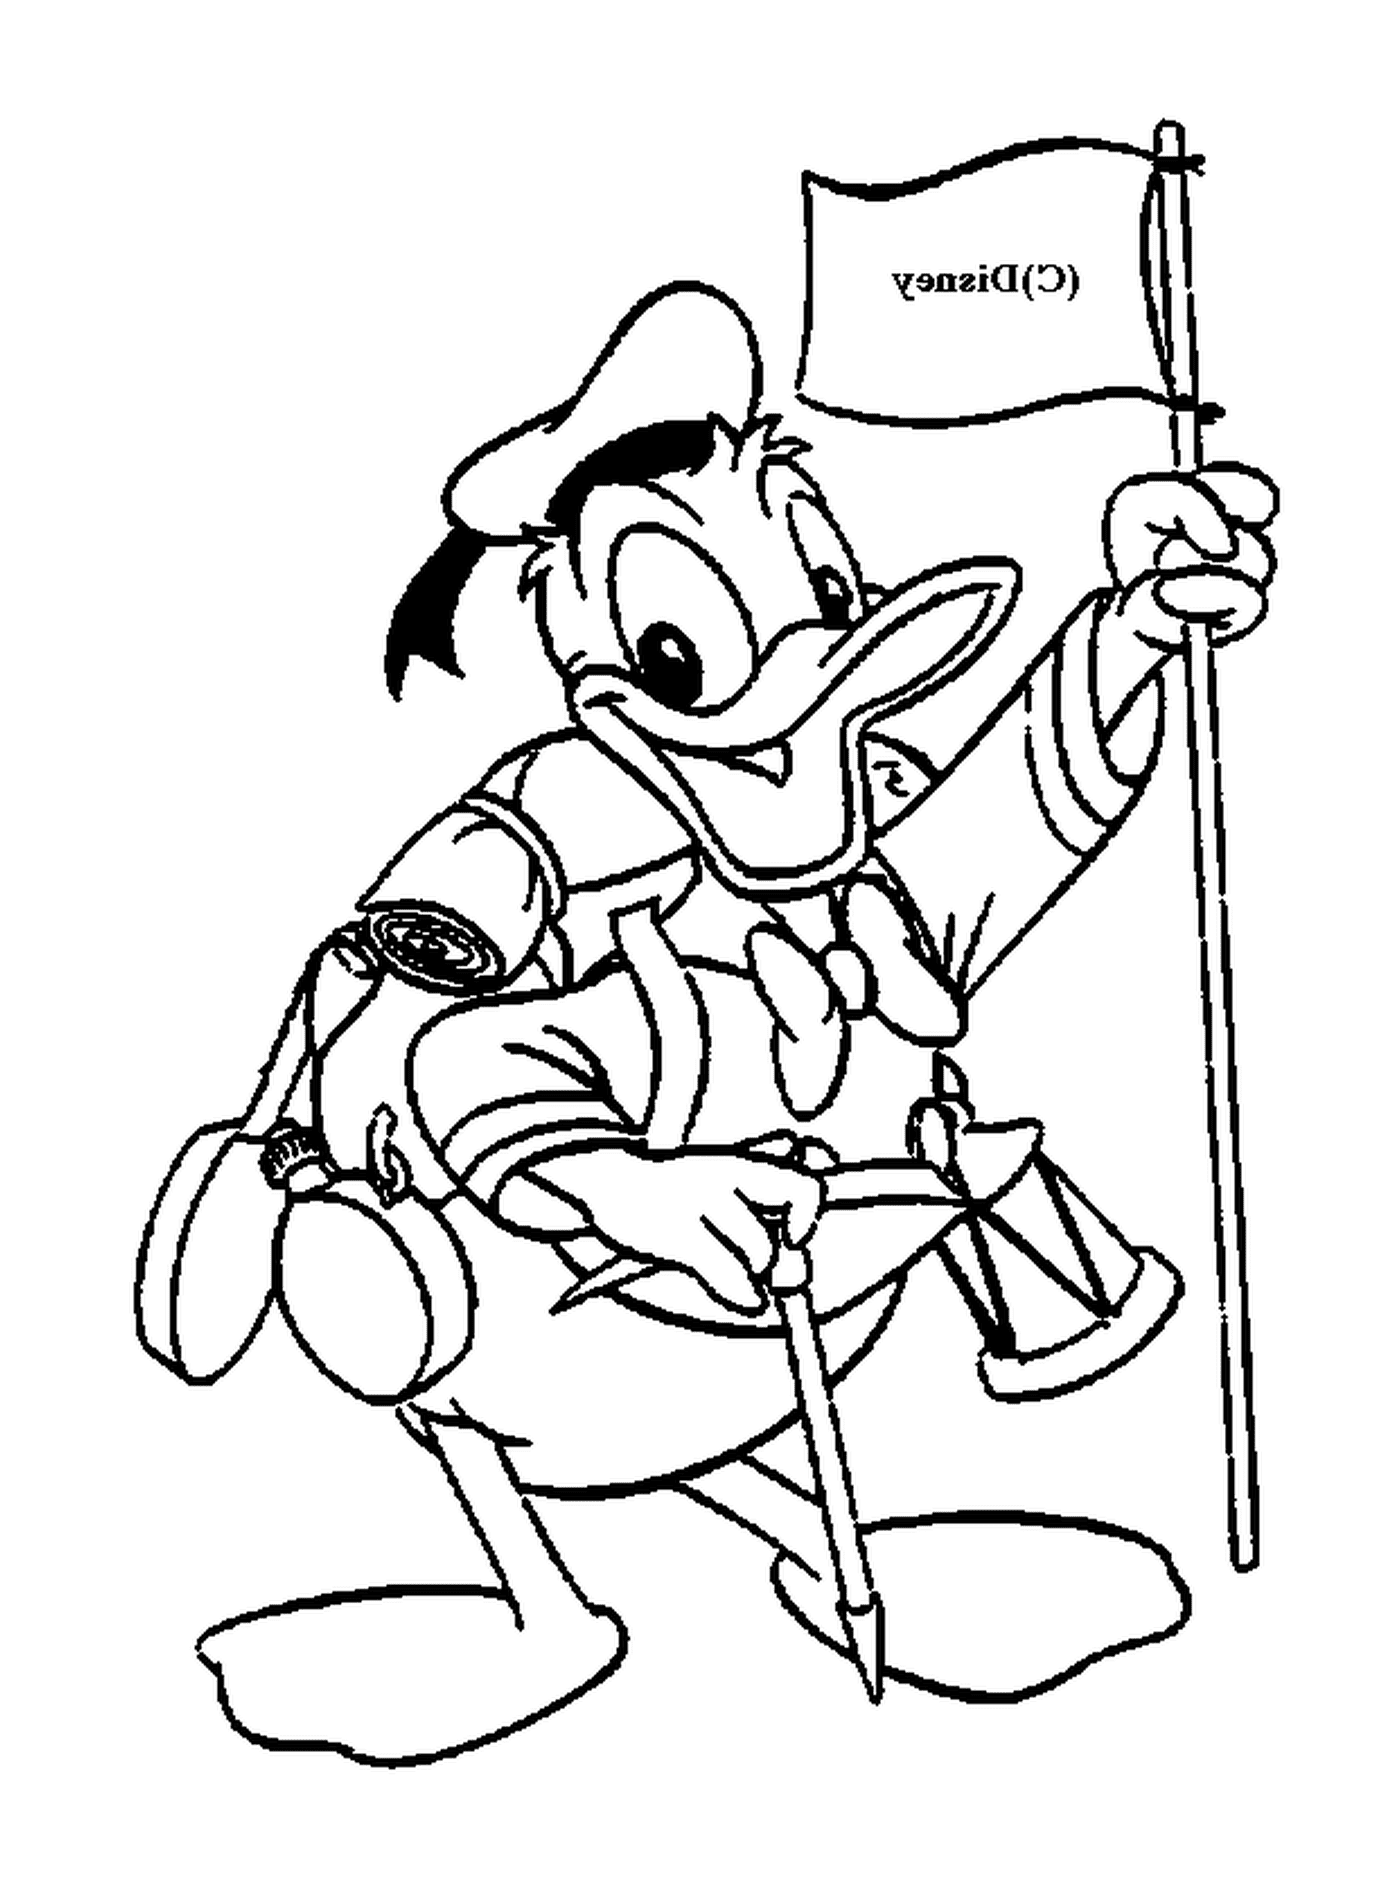   Donald en tenue de scout, fier de son drapeau 